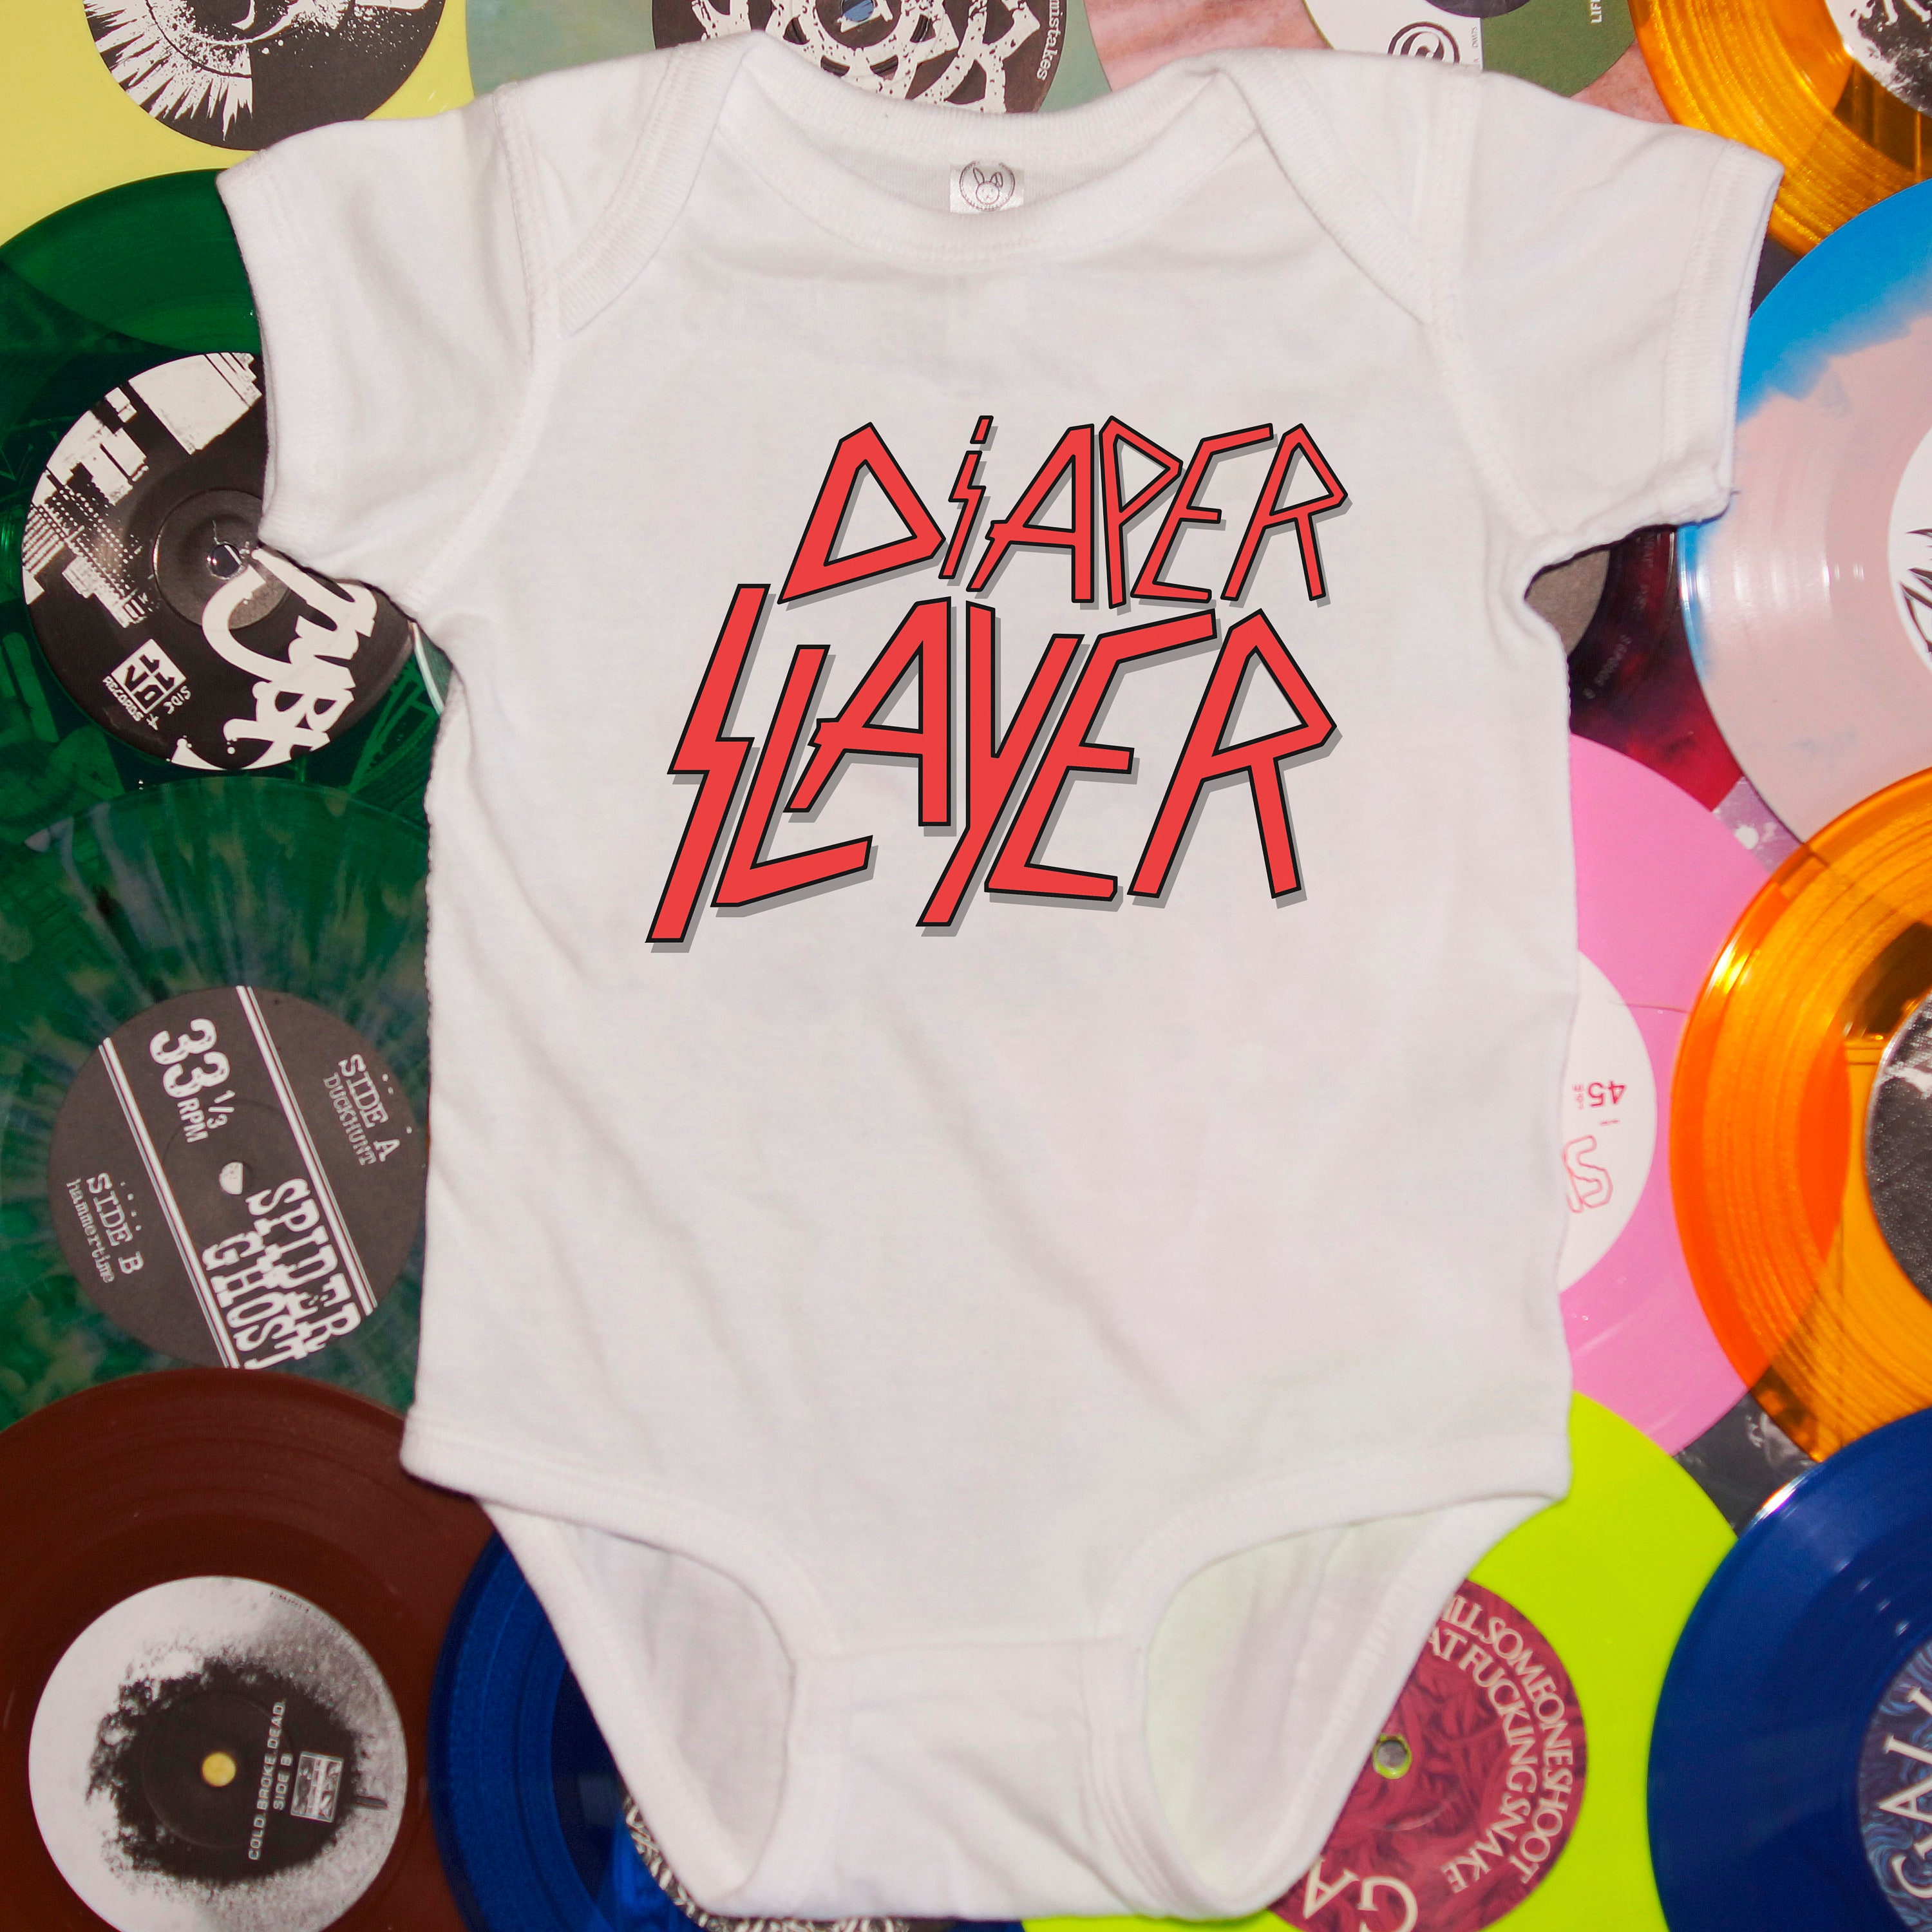 Diaper Slayer Infant Bodysuit